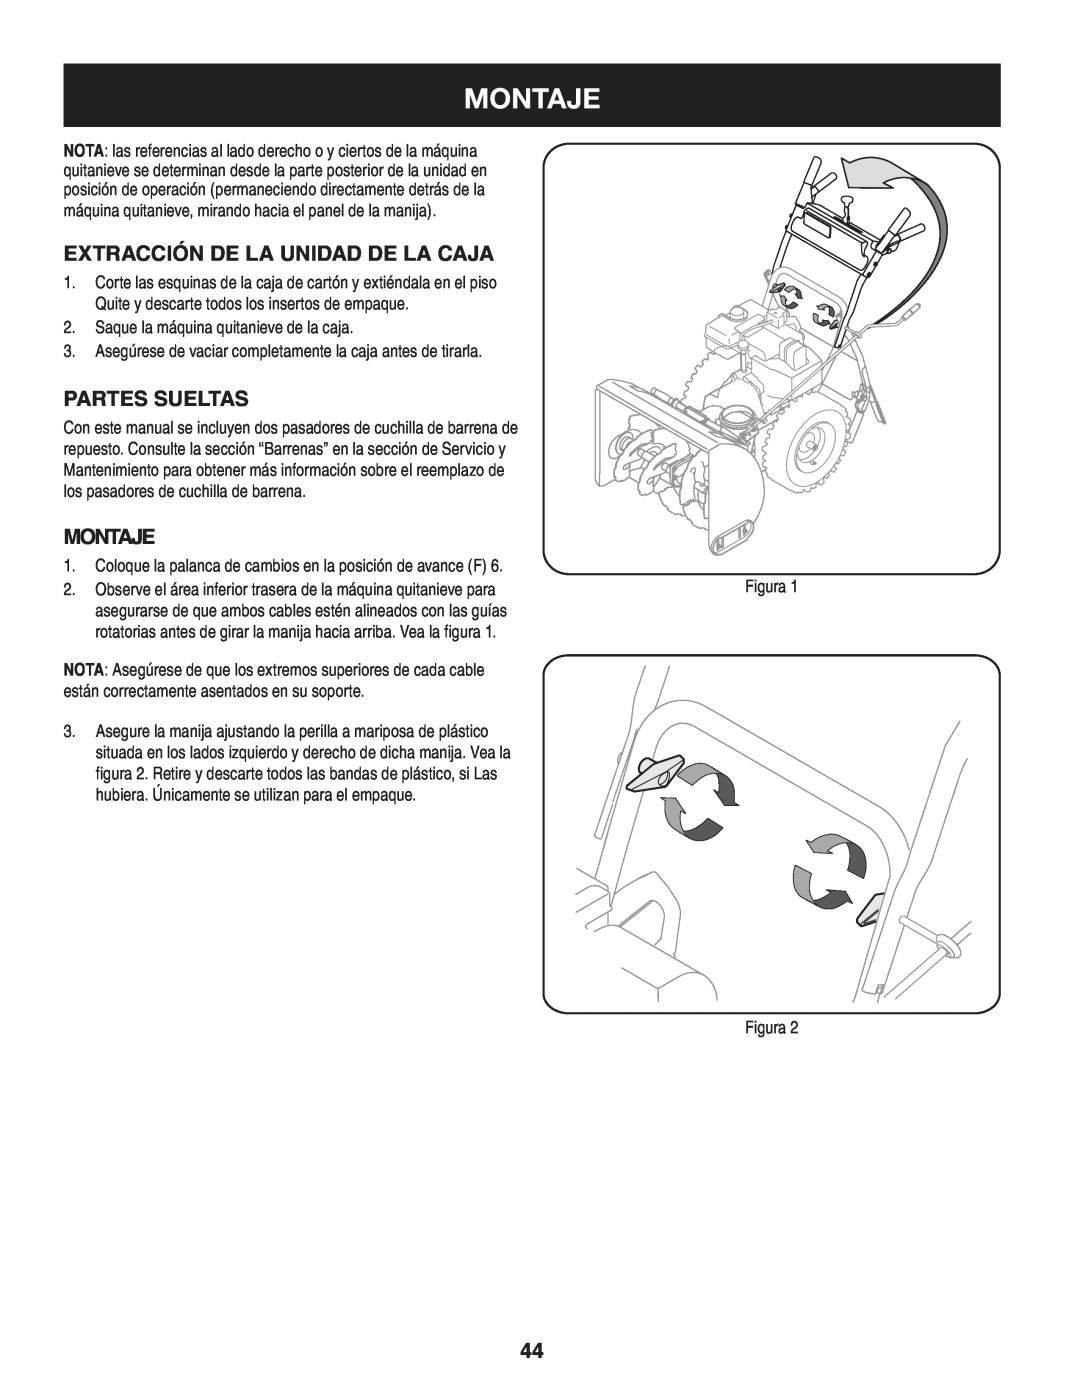 Craftsman 247.8819 operating instructions Montaje, Extracción de la unidad de la caja, Partes sueltas, MOntaje 